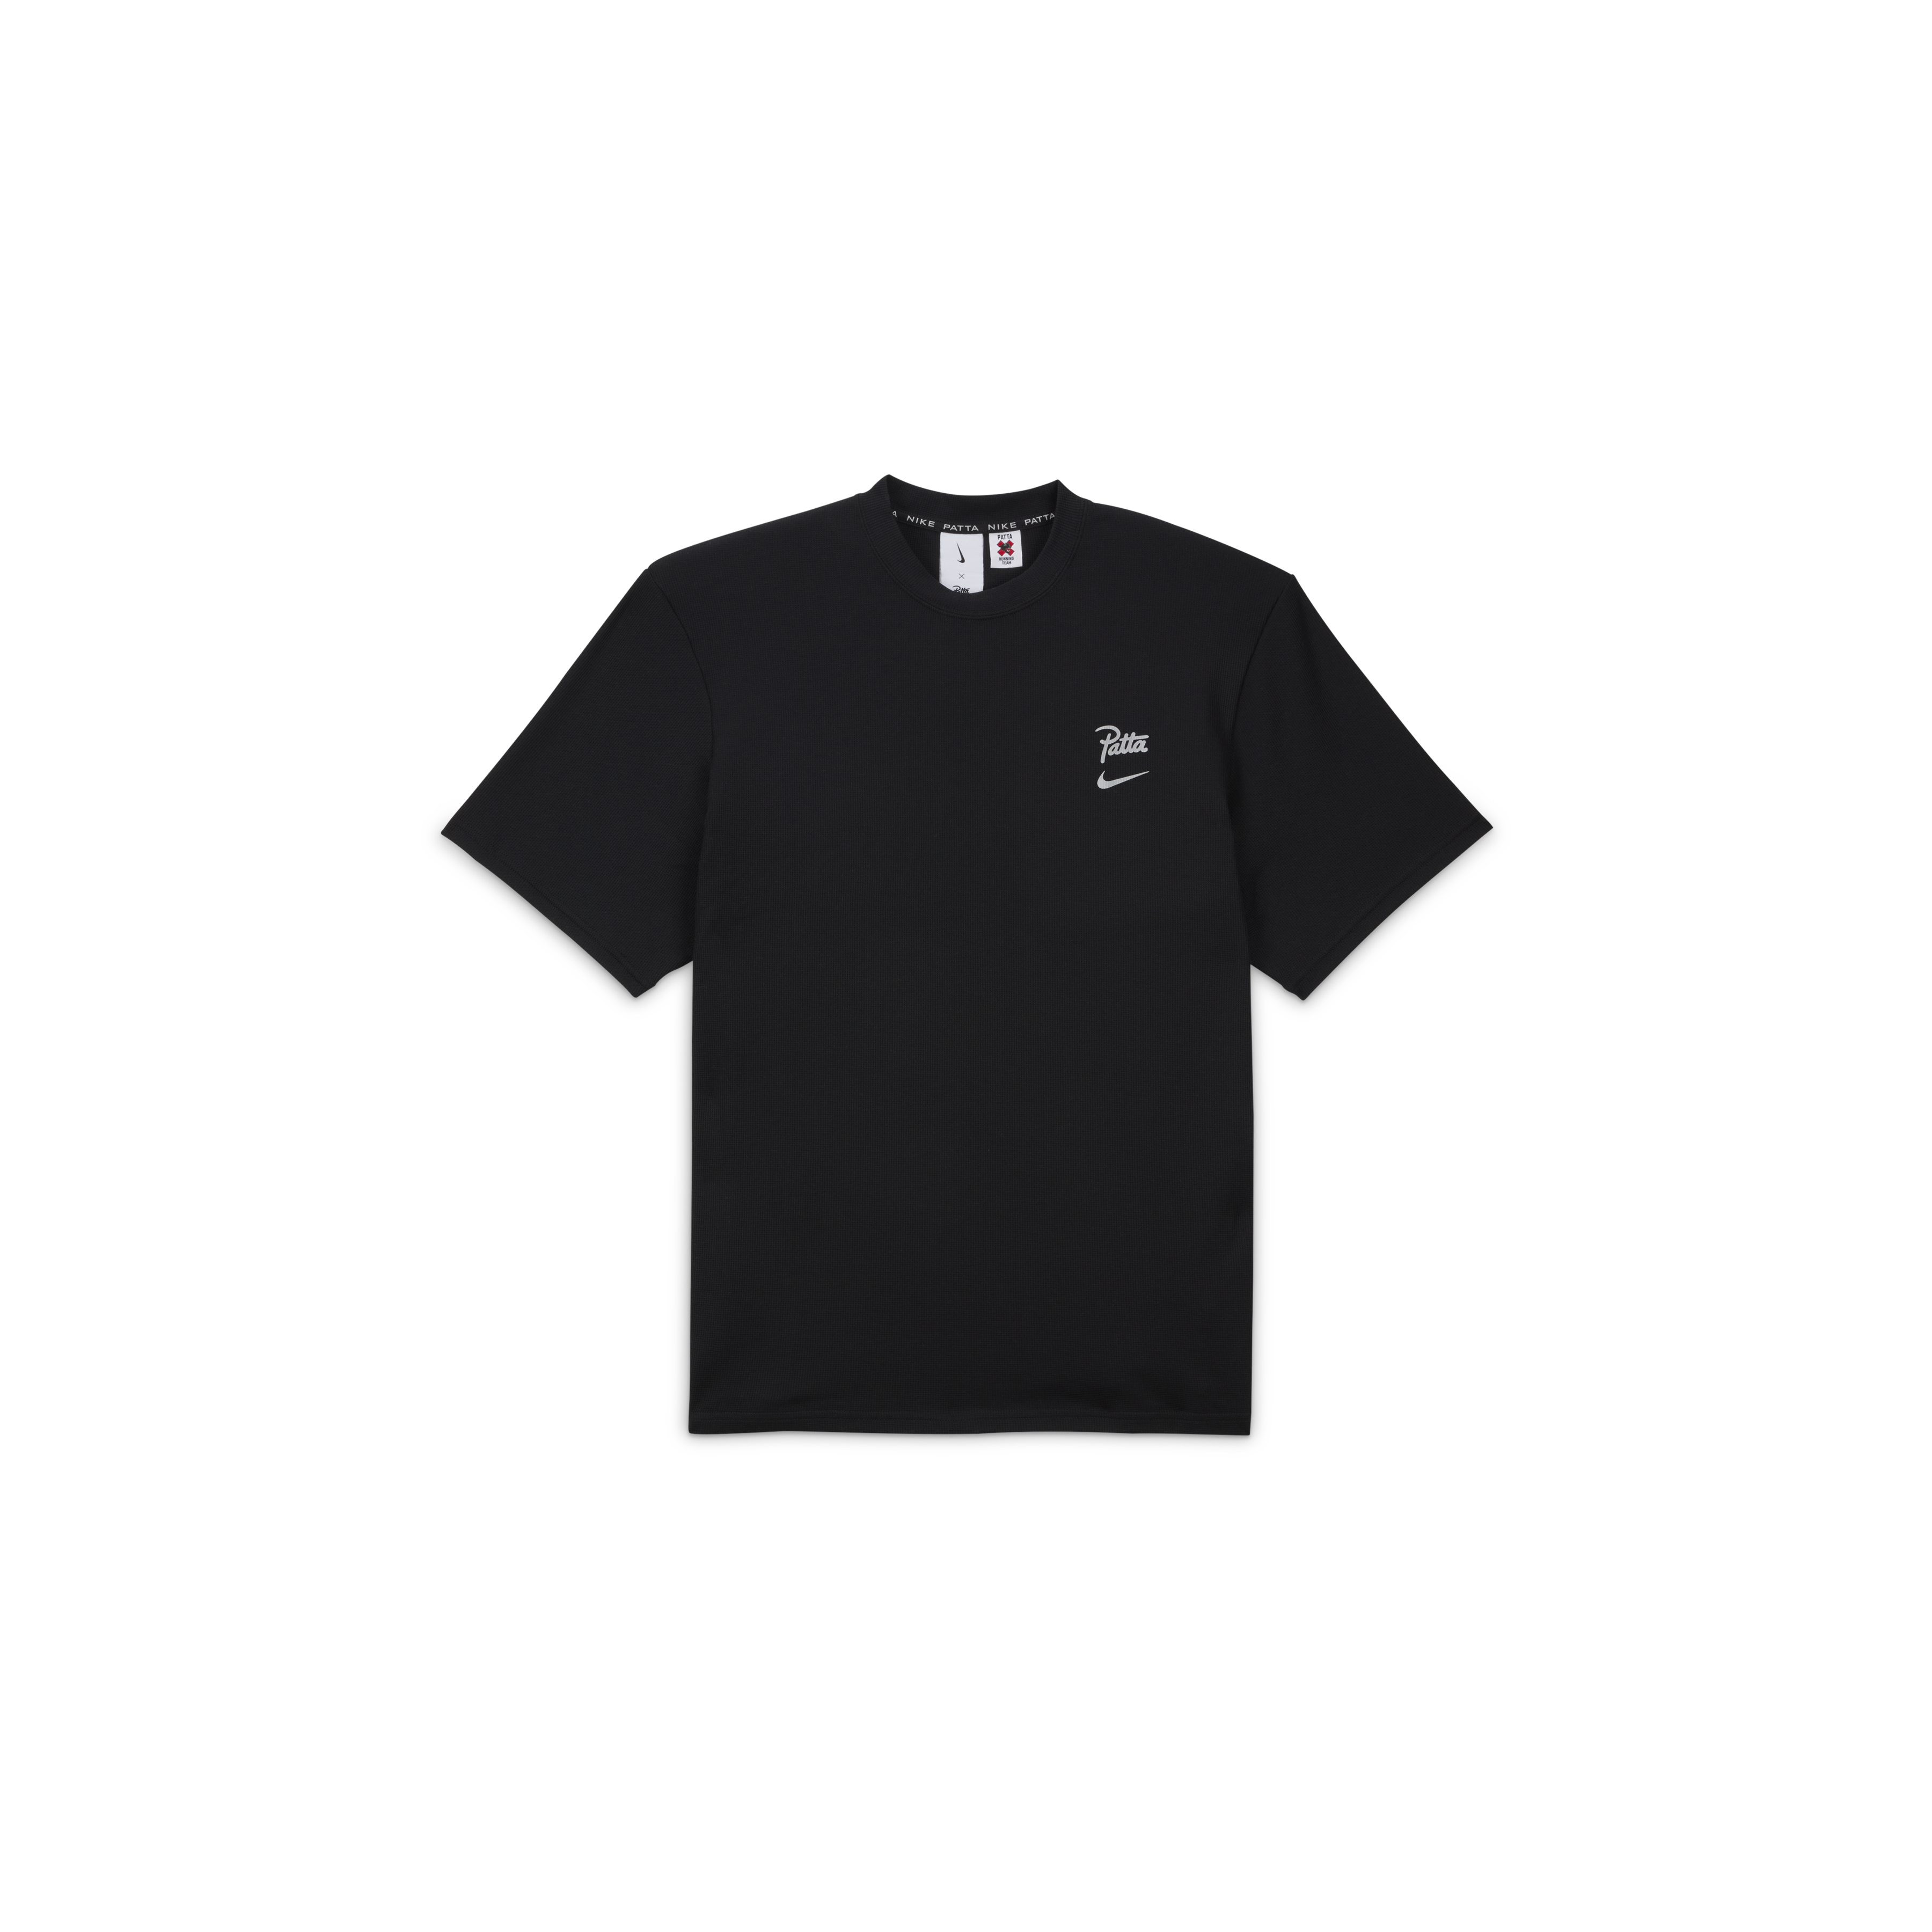 Nike x Patta Running Team T-Shirt